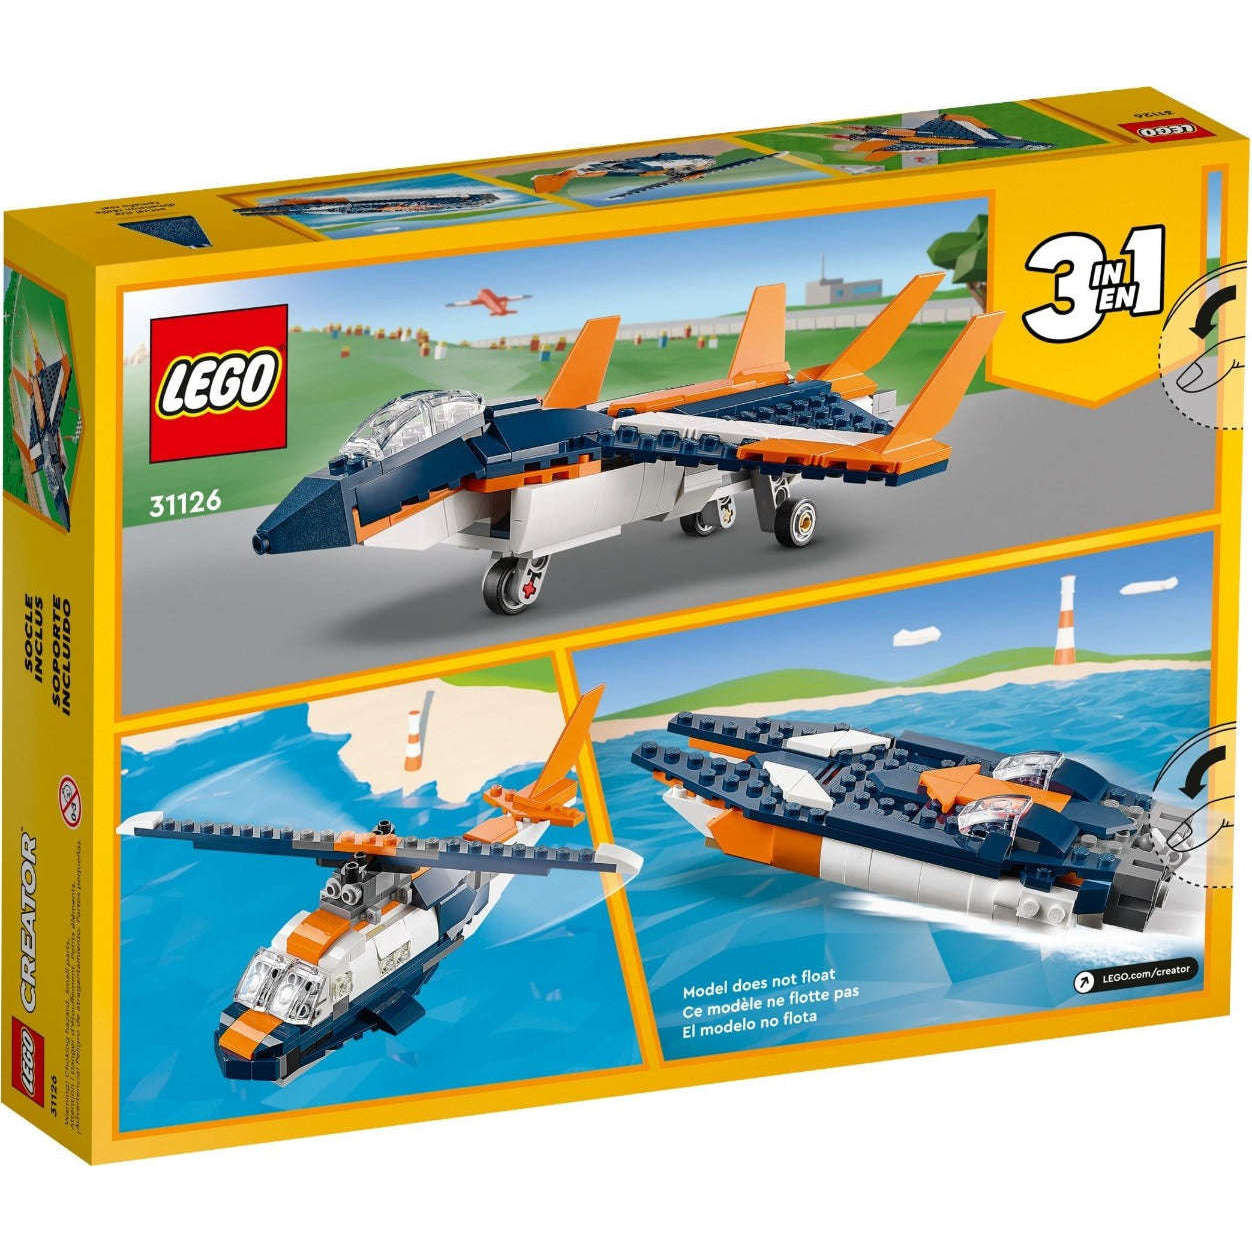 Lego 31126 Creator Supersonic-jet